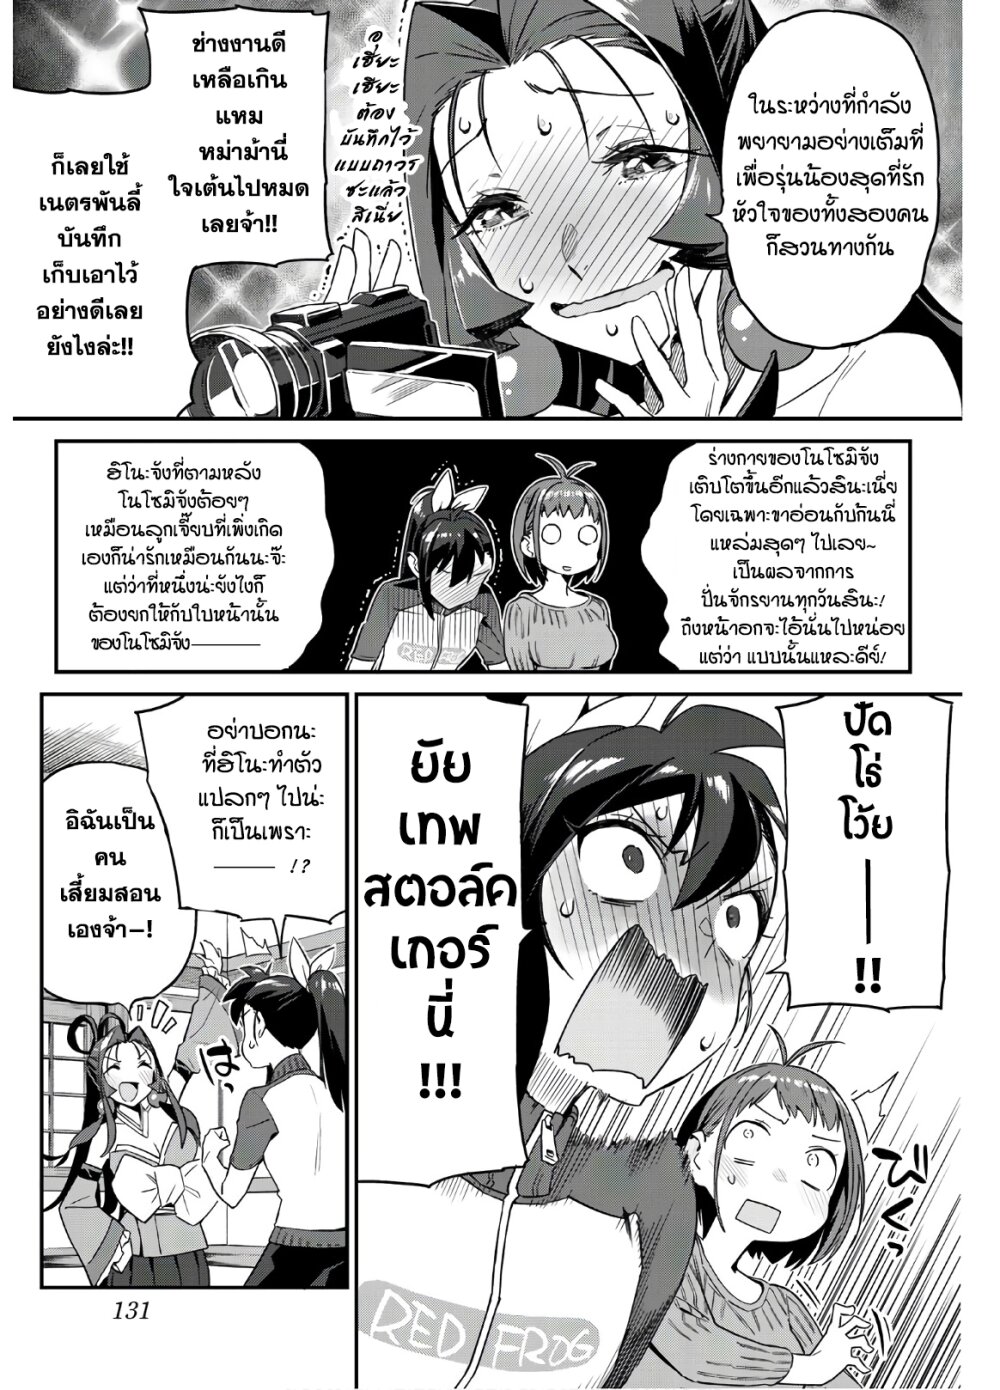 Youkai Izakaya non Bere ke 8 (5)